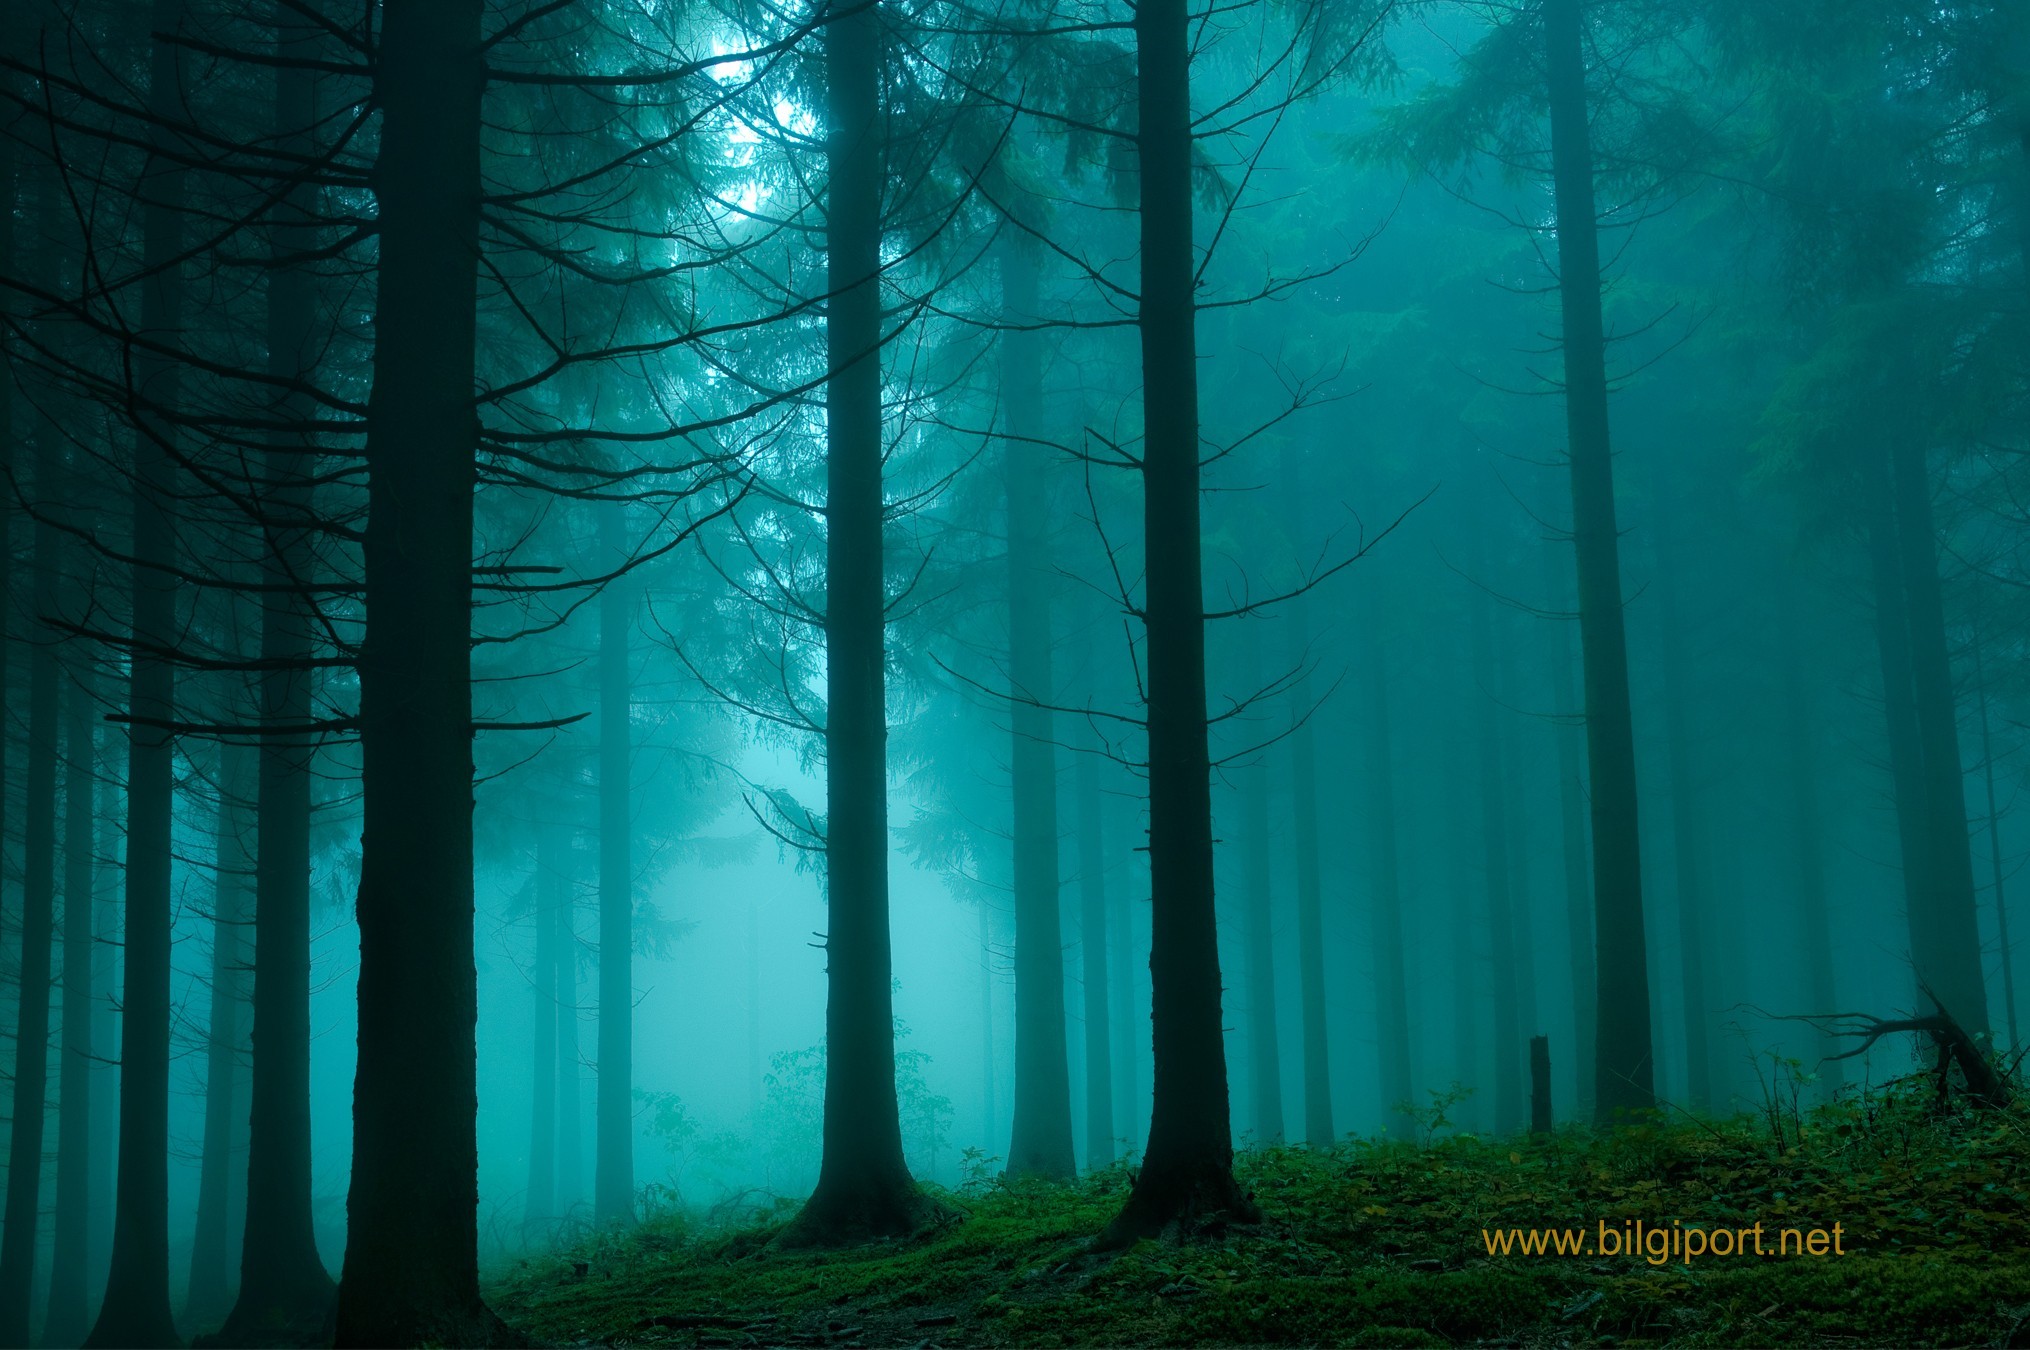 Trees-dark-forest-fog-spruce-1580467-2030x1350